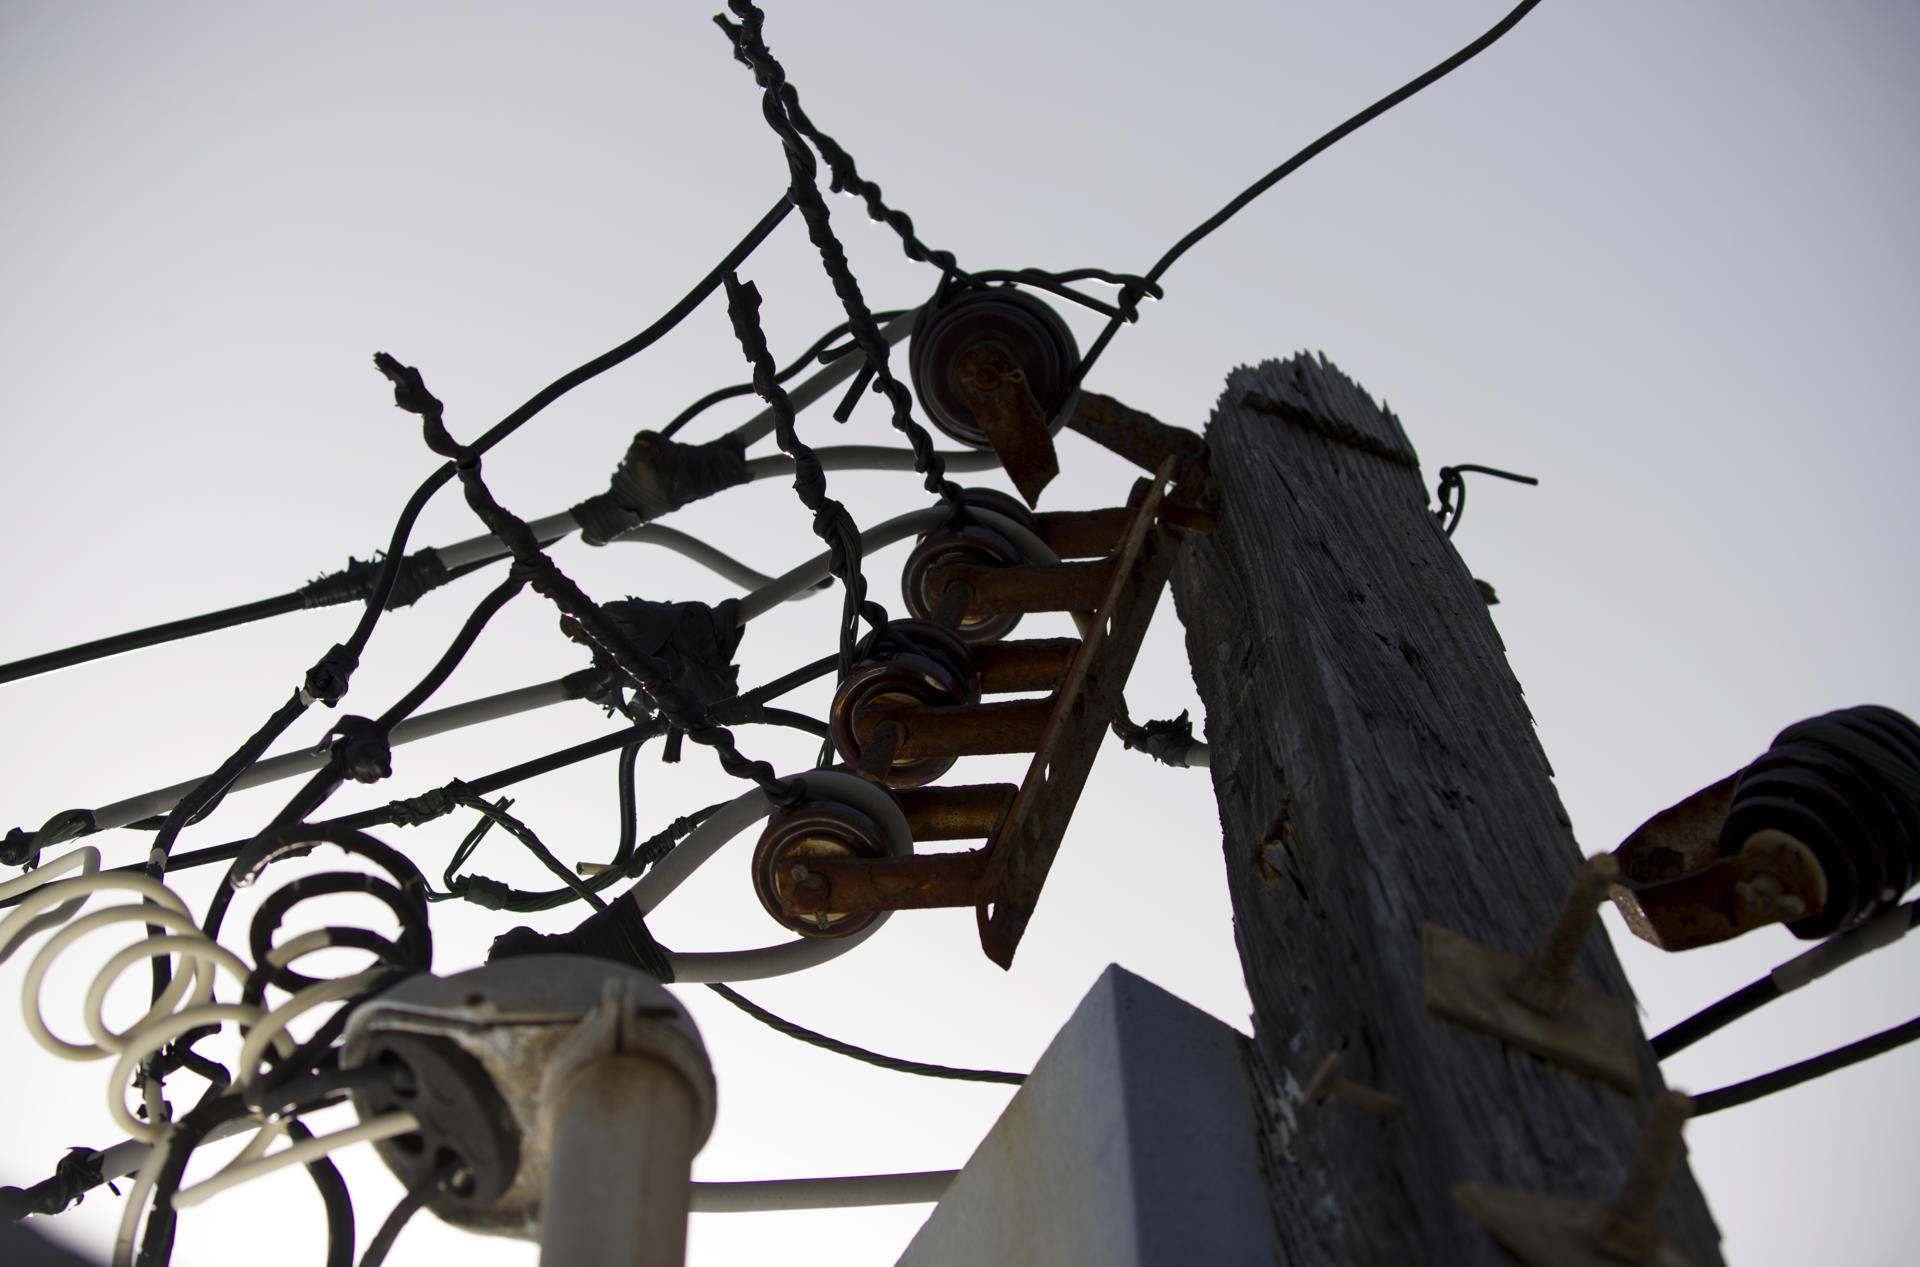 Fotografía de archivo donde se aprecia las malas condiciones de un poste eléctrico en una calle del Viejo San Juan, el casco histórico de la capital de Puerto Rico. EFE/ Thais Llorca